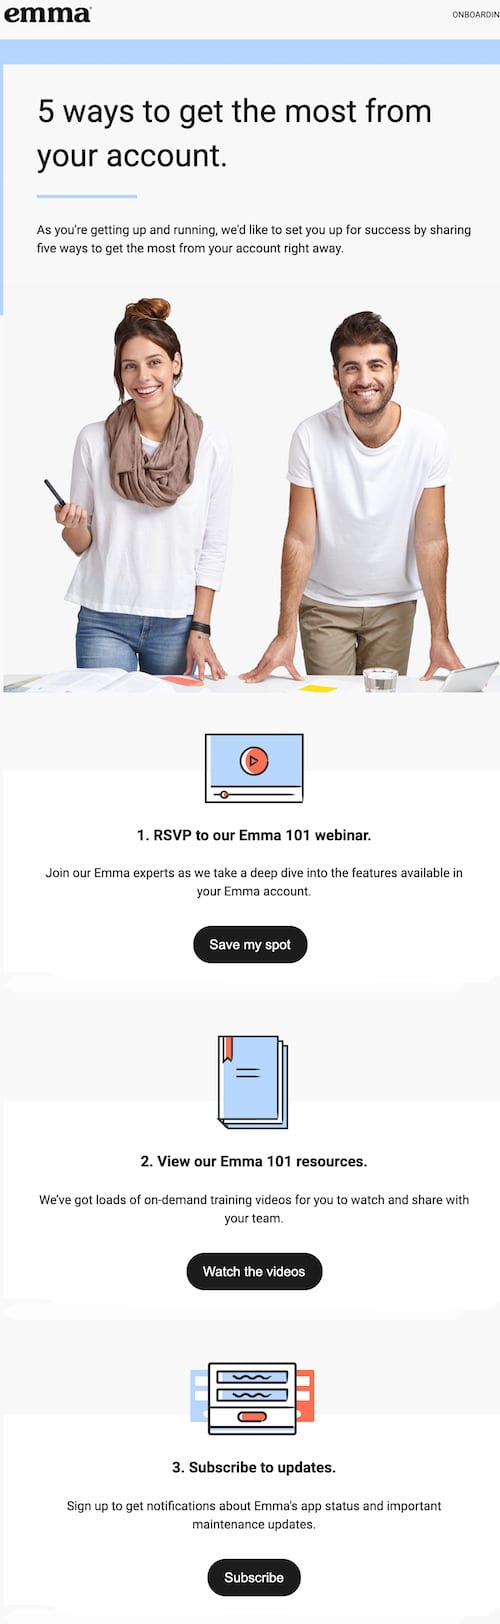 inhaltsbasiertes E-Mail-Beispiel: Hier ist ein Beispiel für Emmas inhaltsbasierte automatisierte E-Mail.